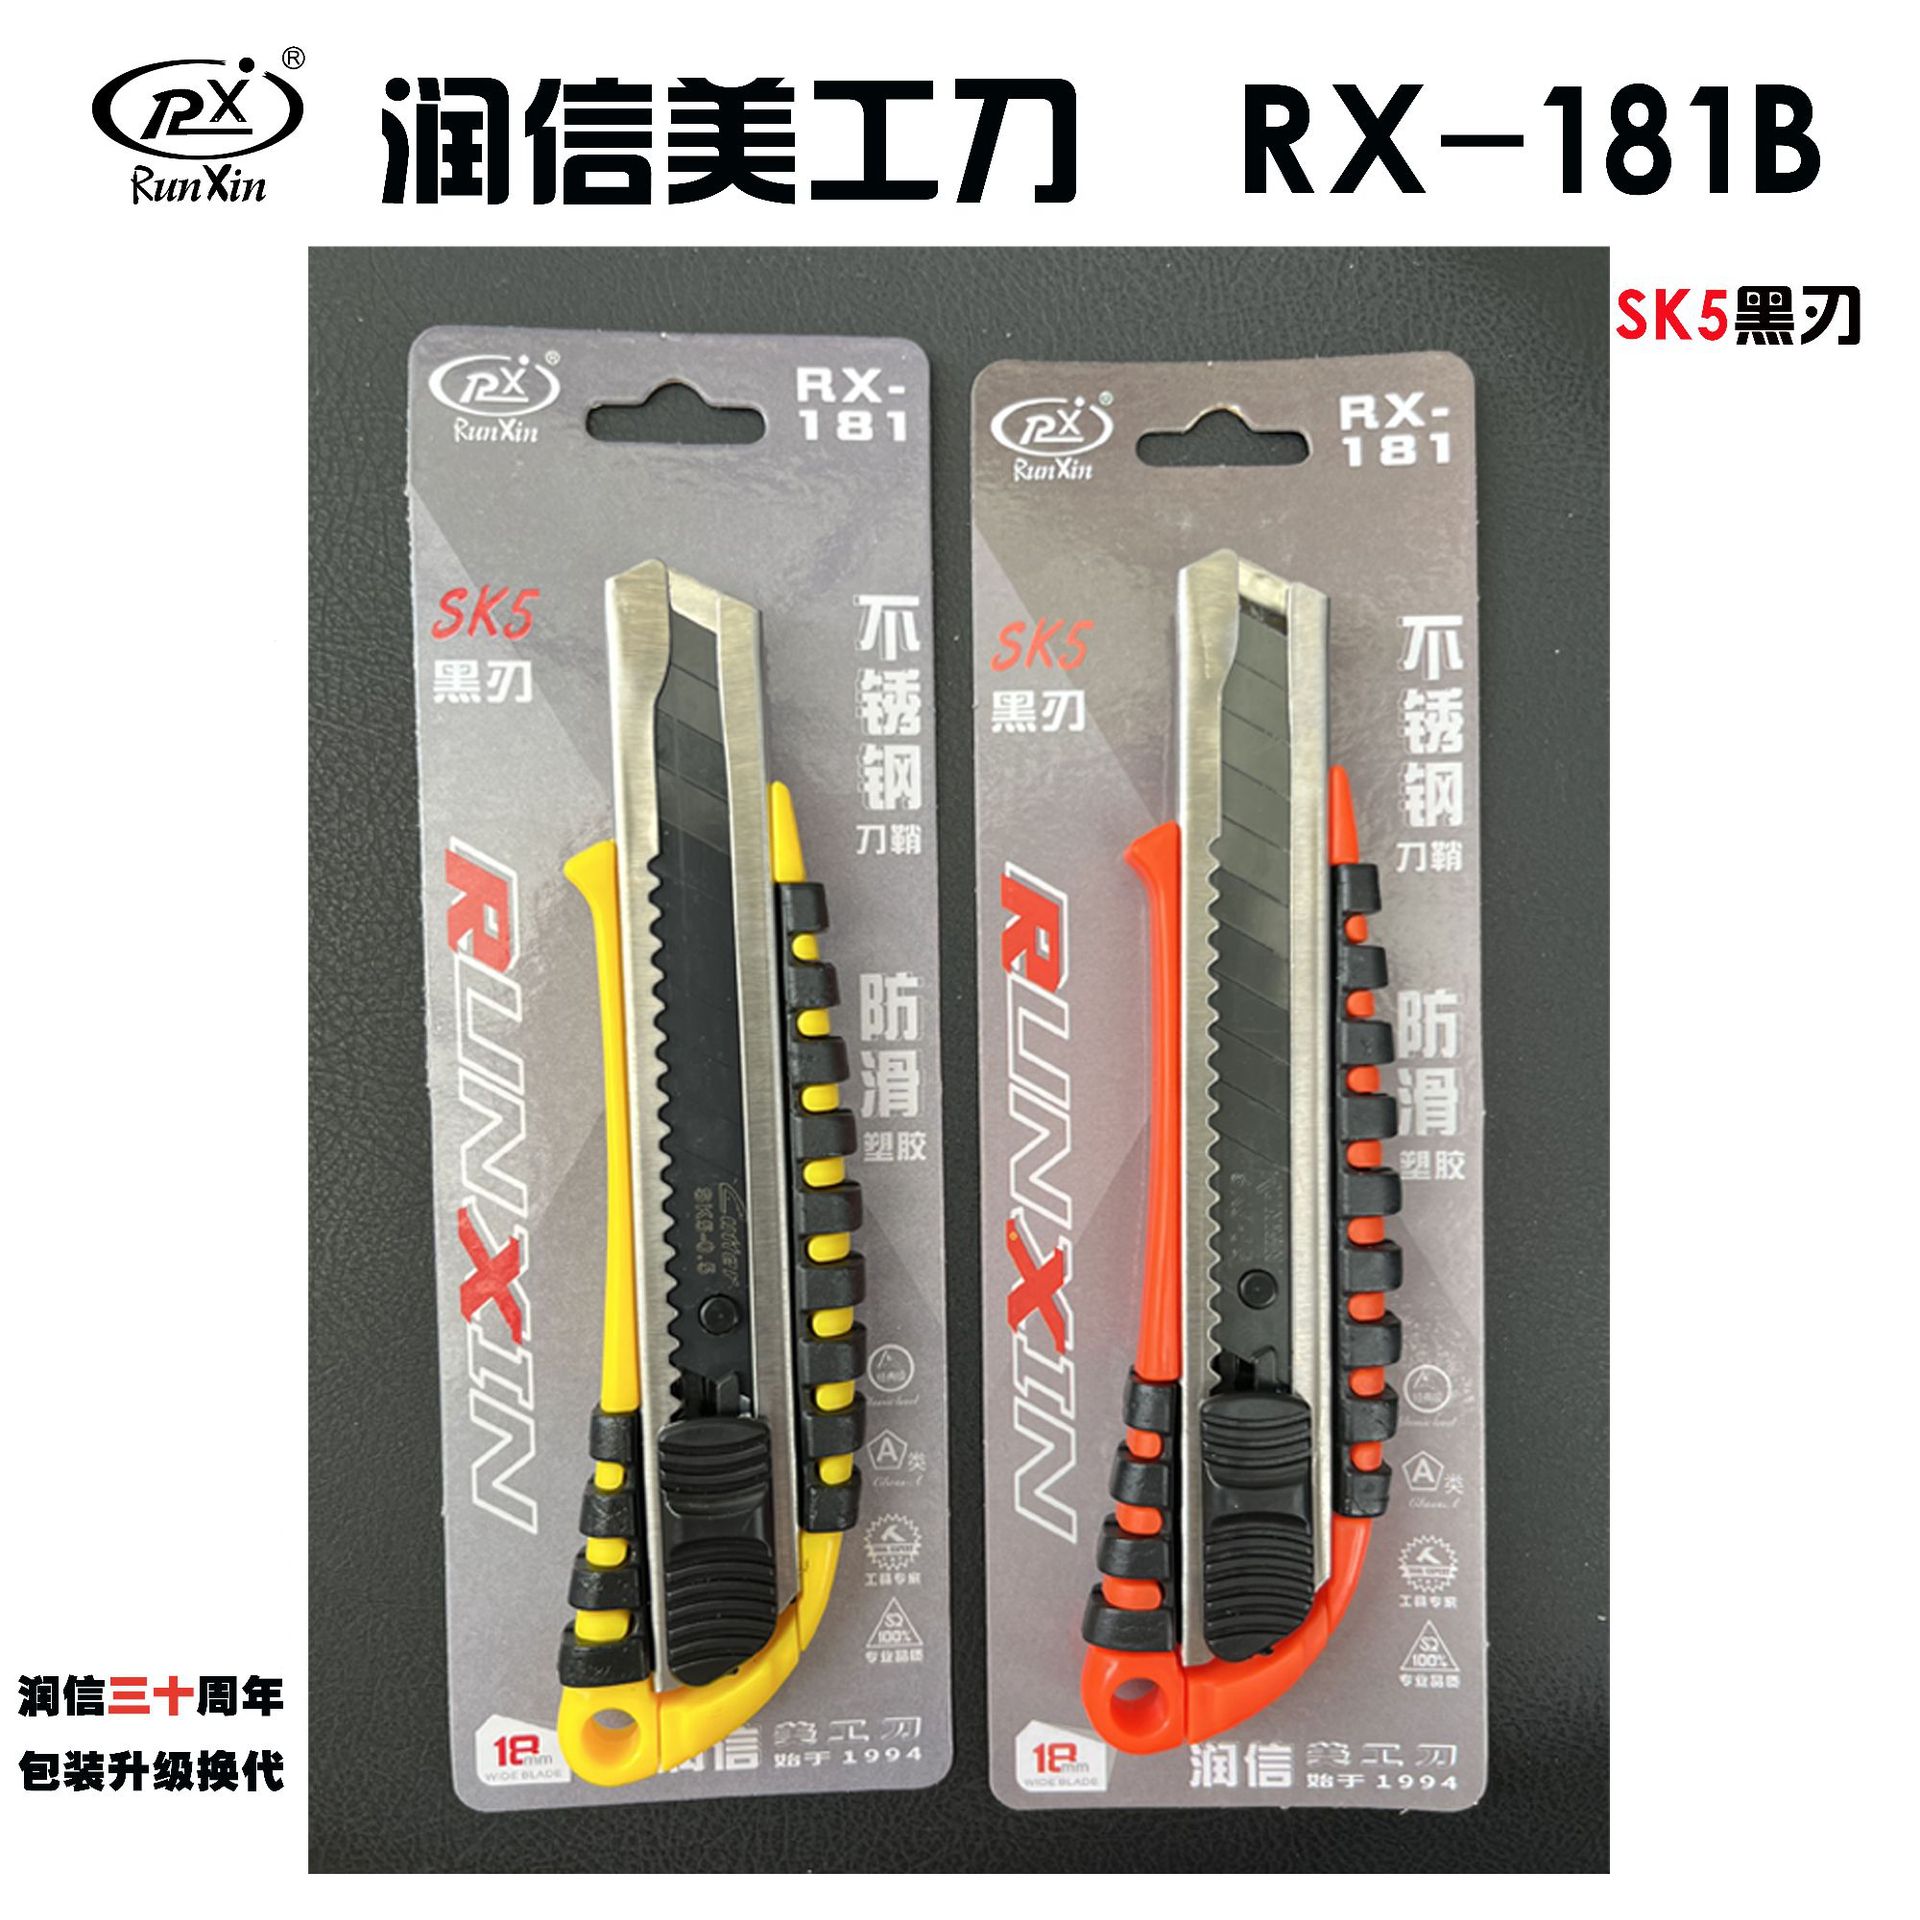 润信美工刀RX-181橡胶手柄舒适刀具 SK5黑钢刀片锋利介刀架裁纸刀